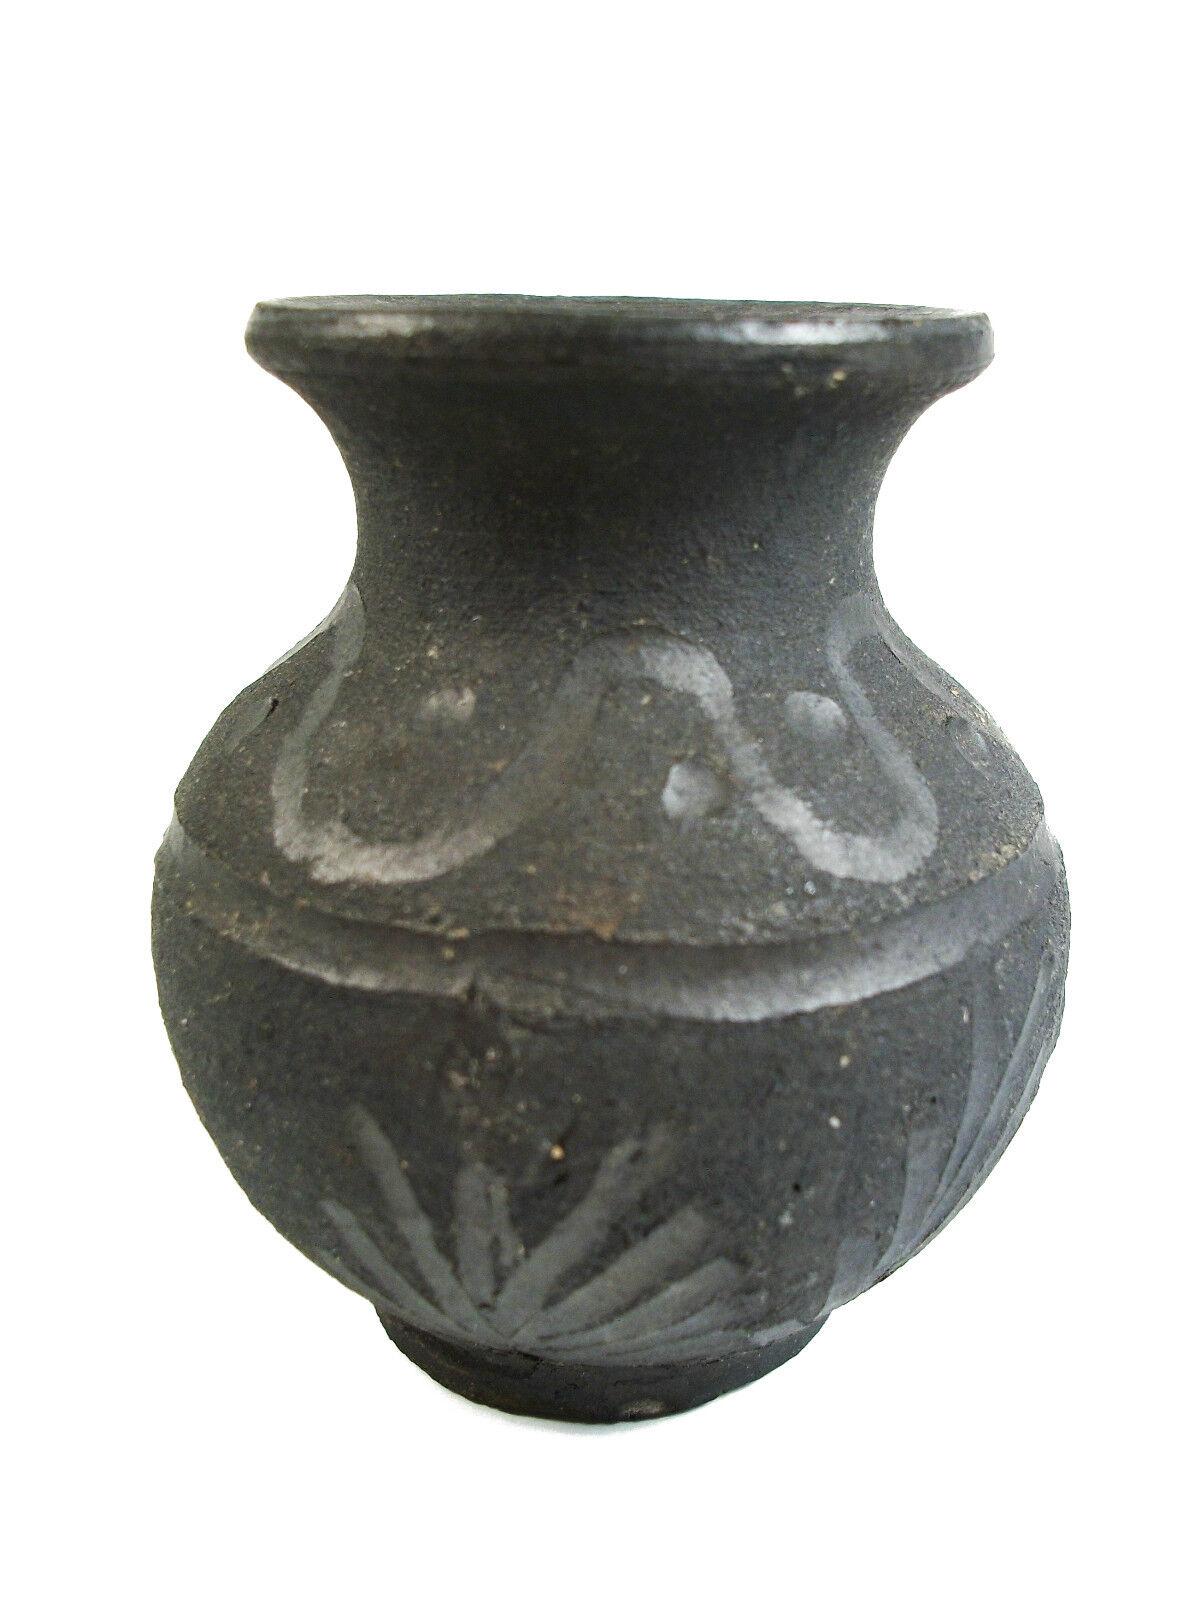 Mid-Century Modern Miniature Raku Studio Pottery Bud Vase - Incised Decoration - Late 20th Century For Sale